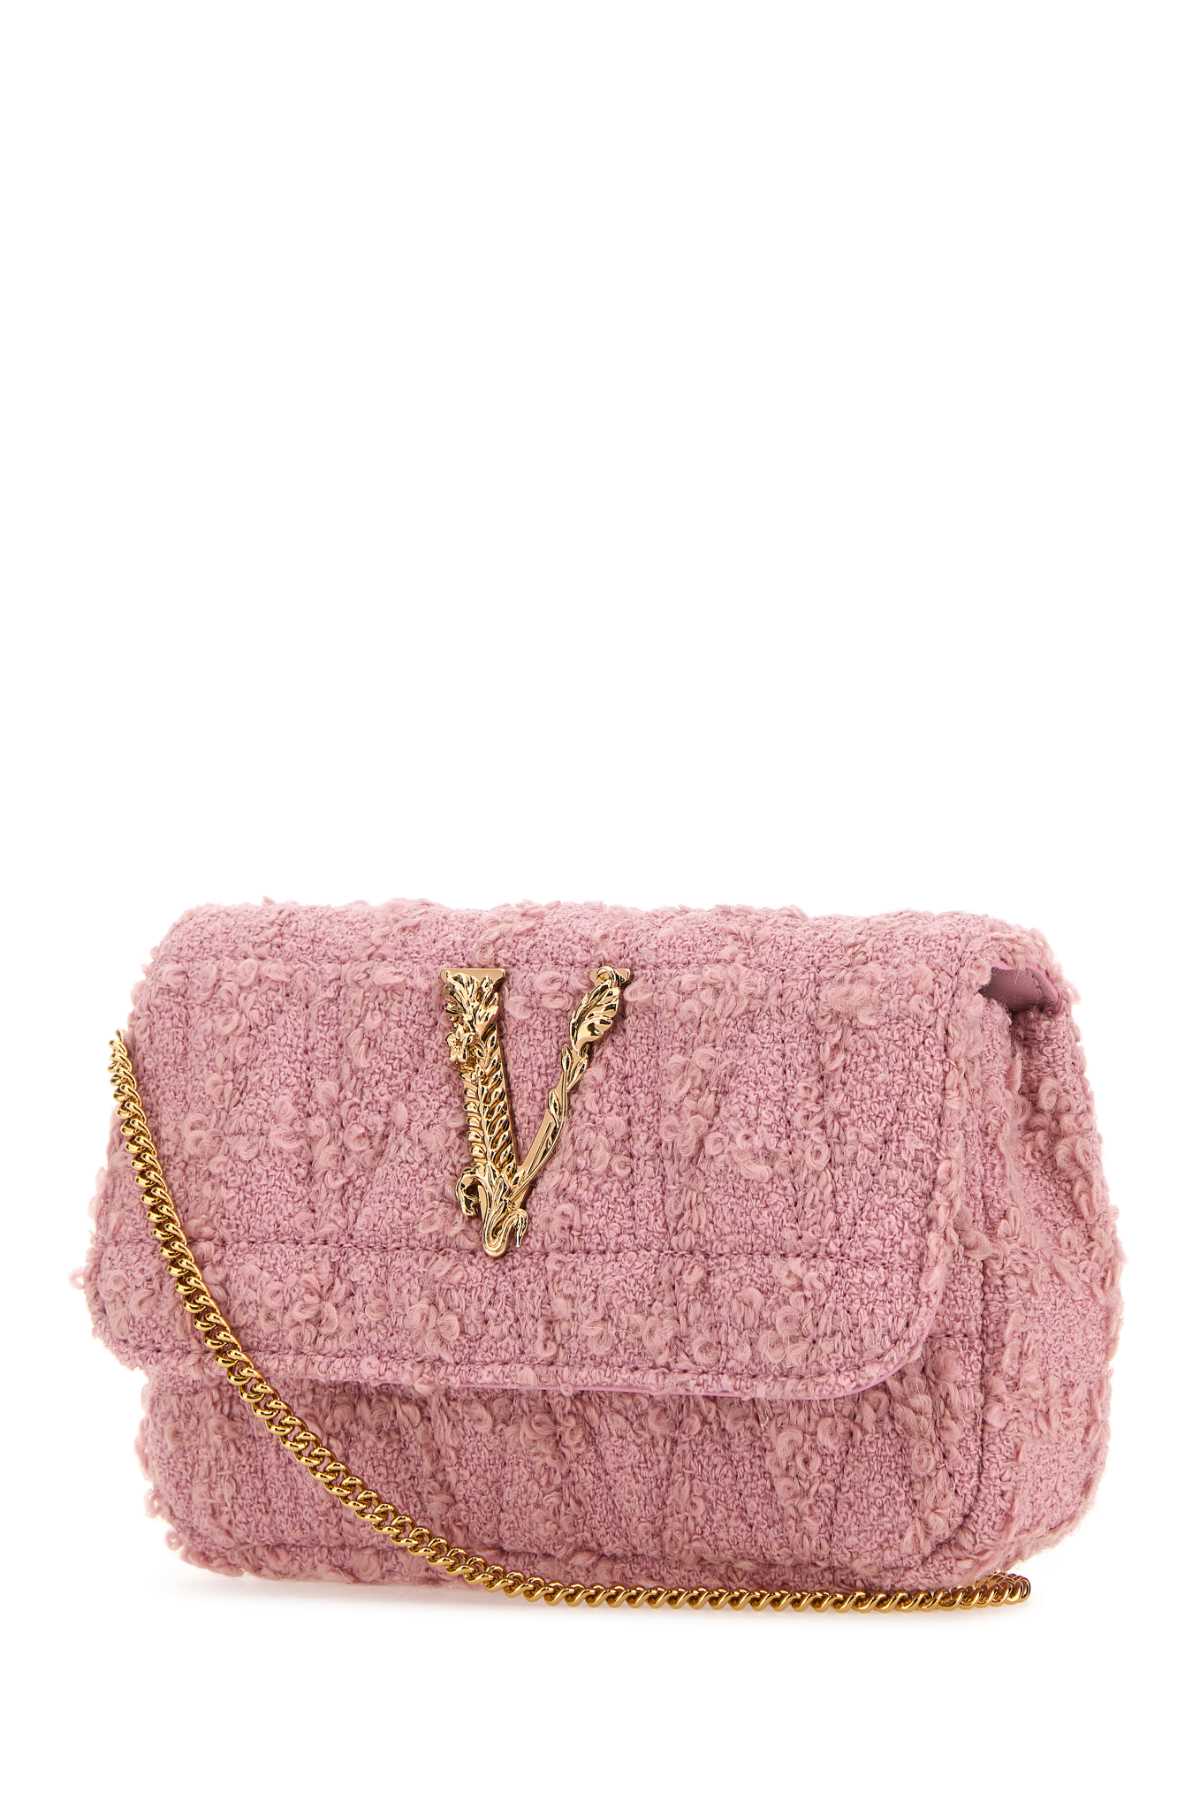 Versace Pink Fabric Mini Virtus Clutch In Palepinkgold